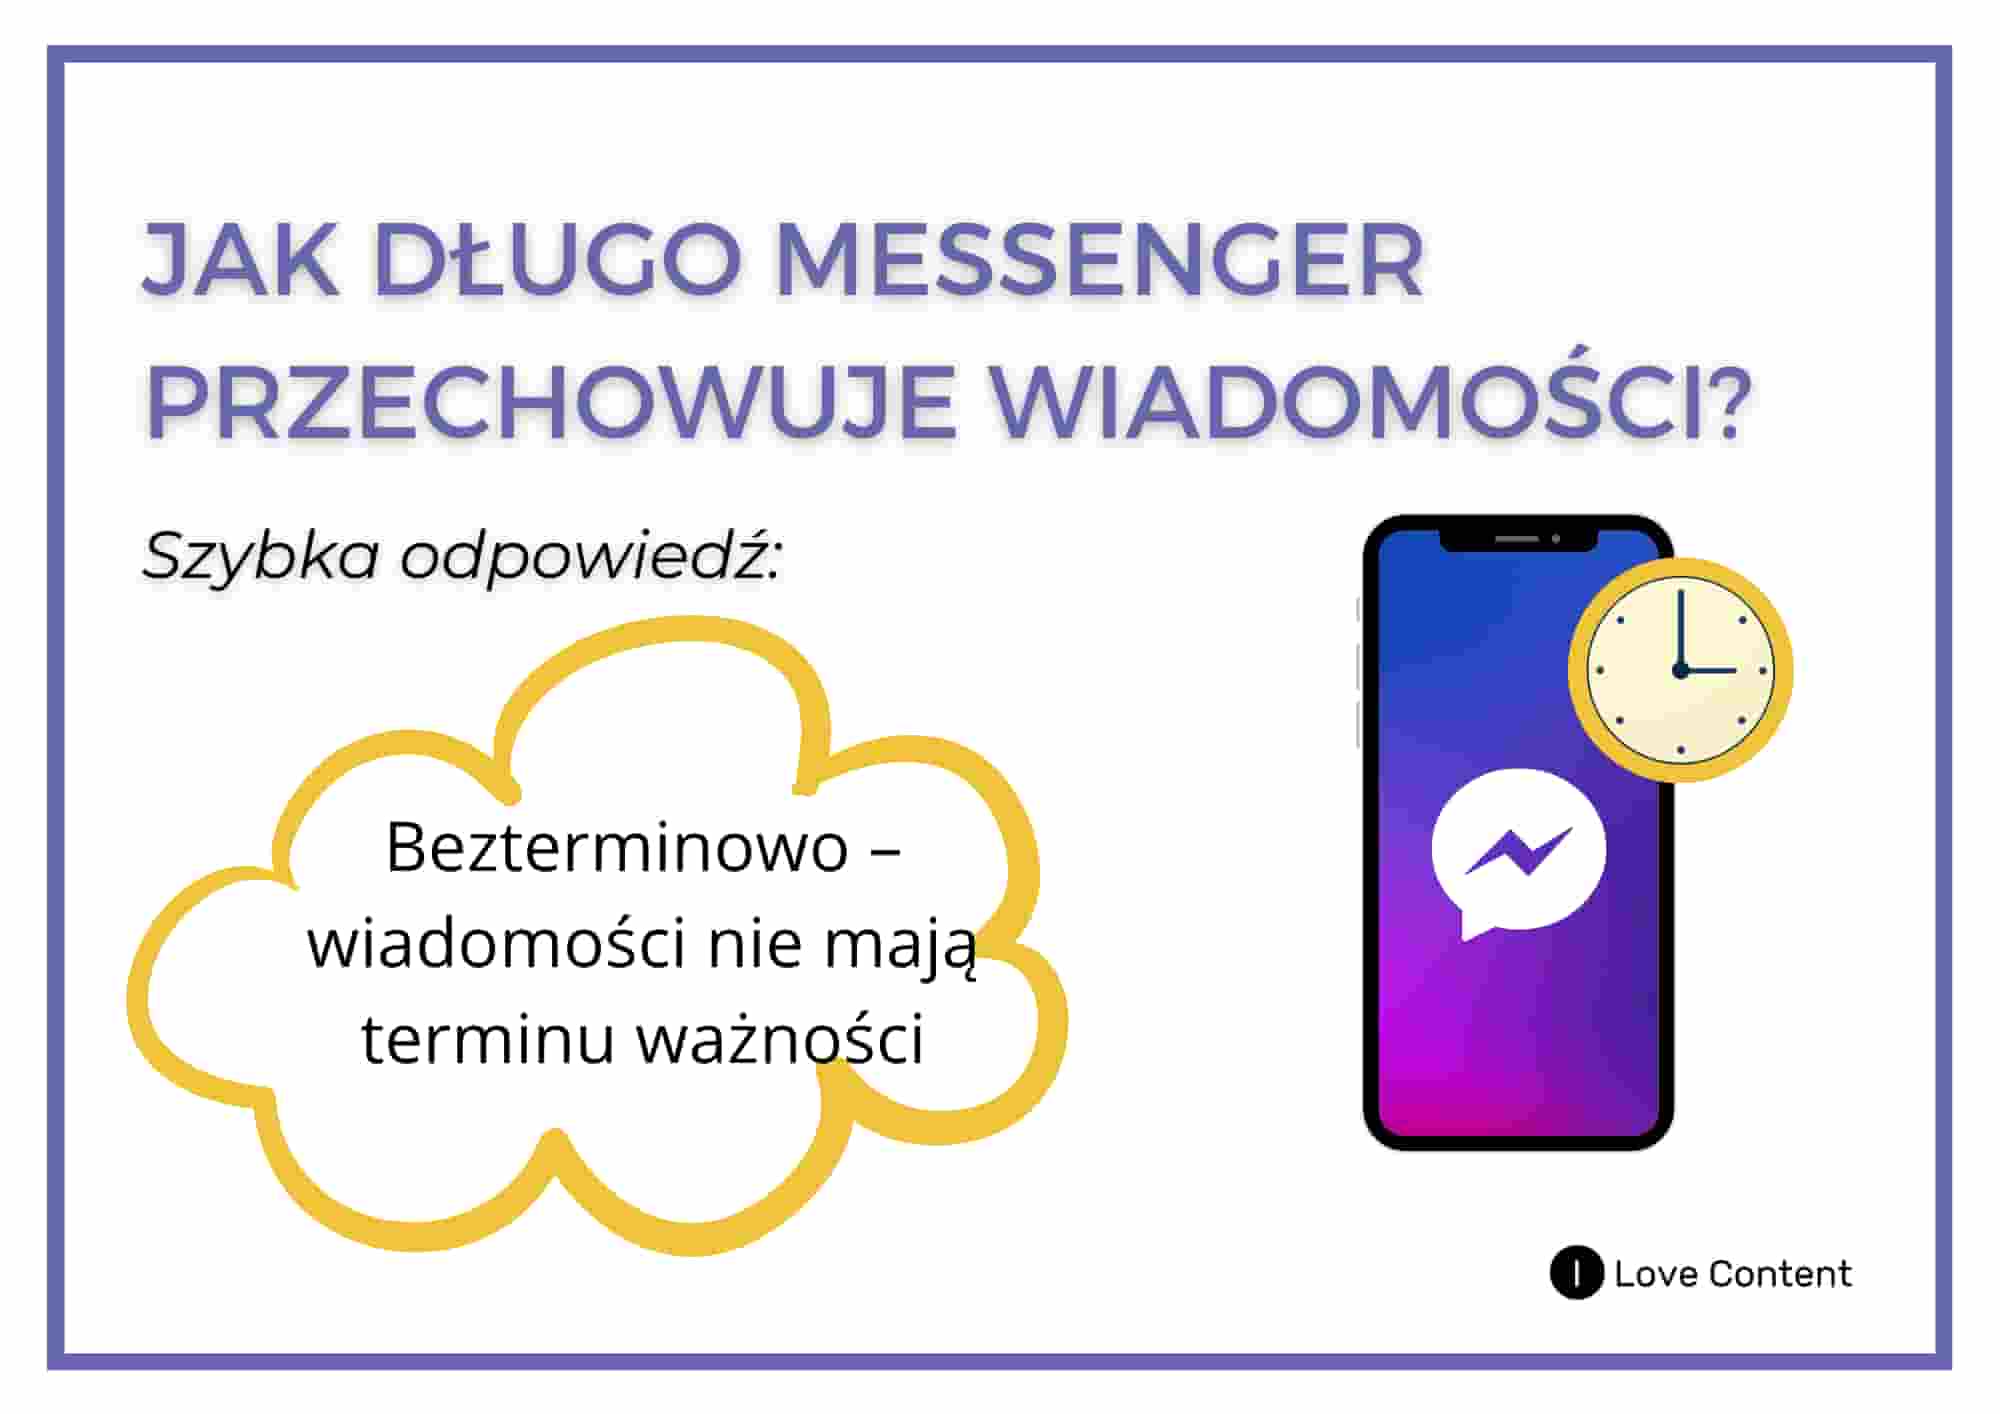 1. Jak długo Messenger przechowuje wiadomości